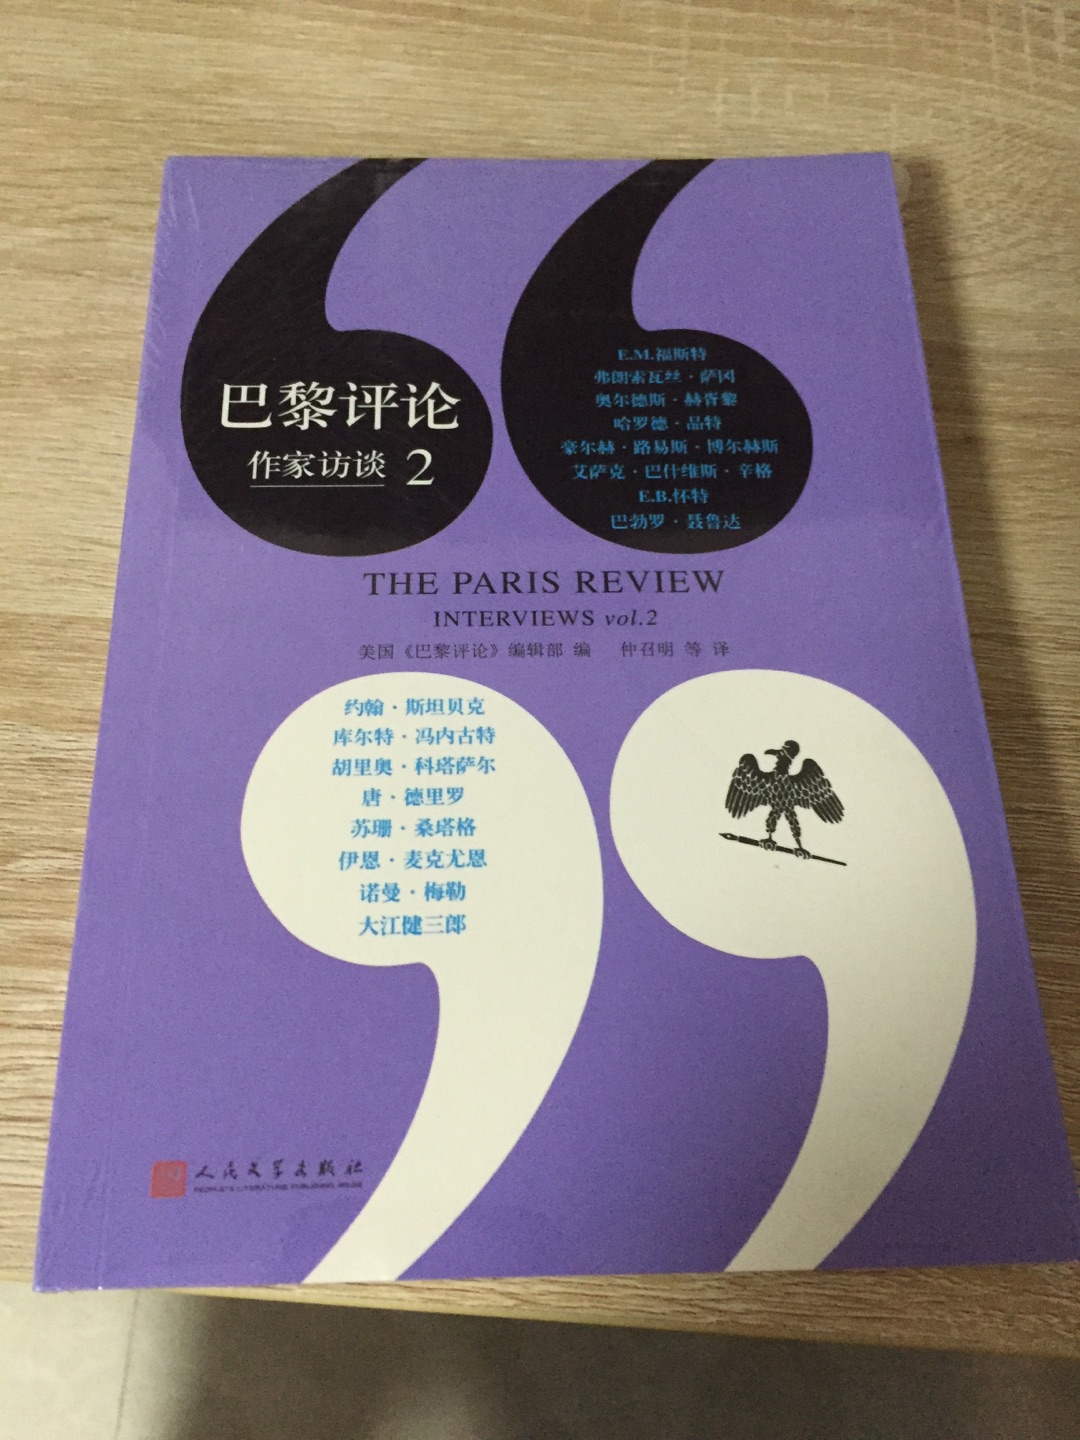 一天就寄到了，之前看过书店里上海文艺的版本后想买了，碰巧等上人民文学的，还不知差别